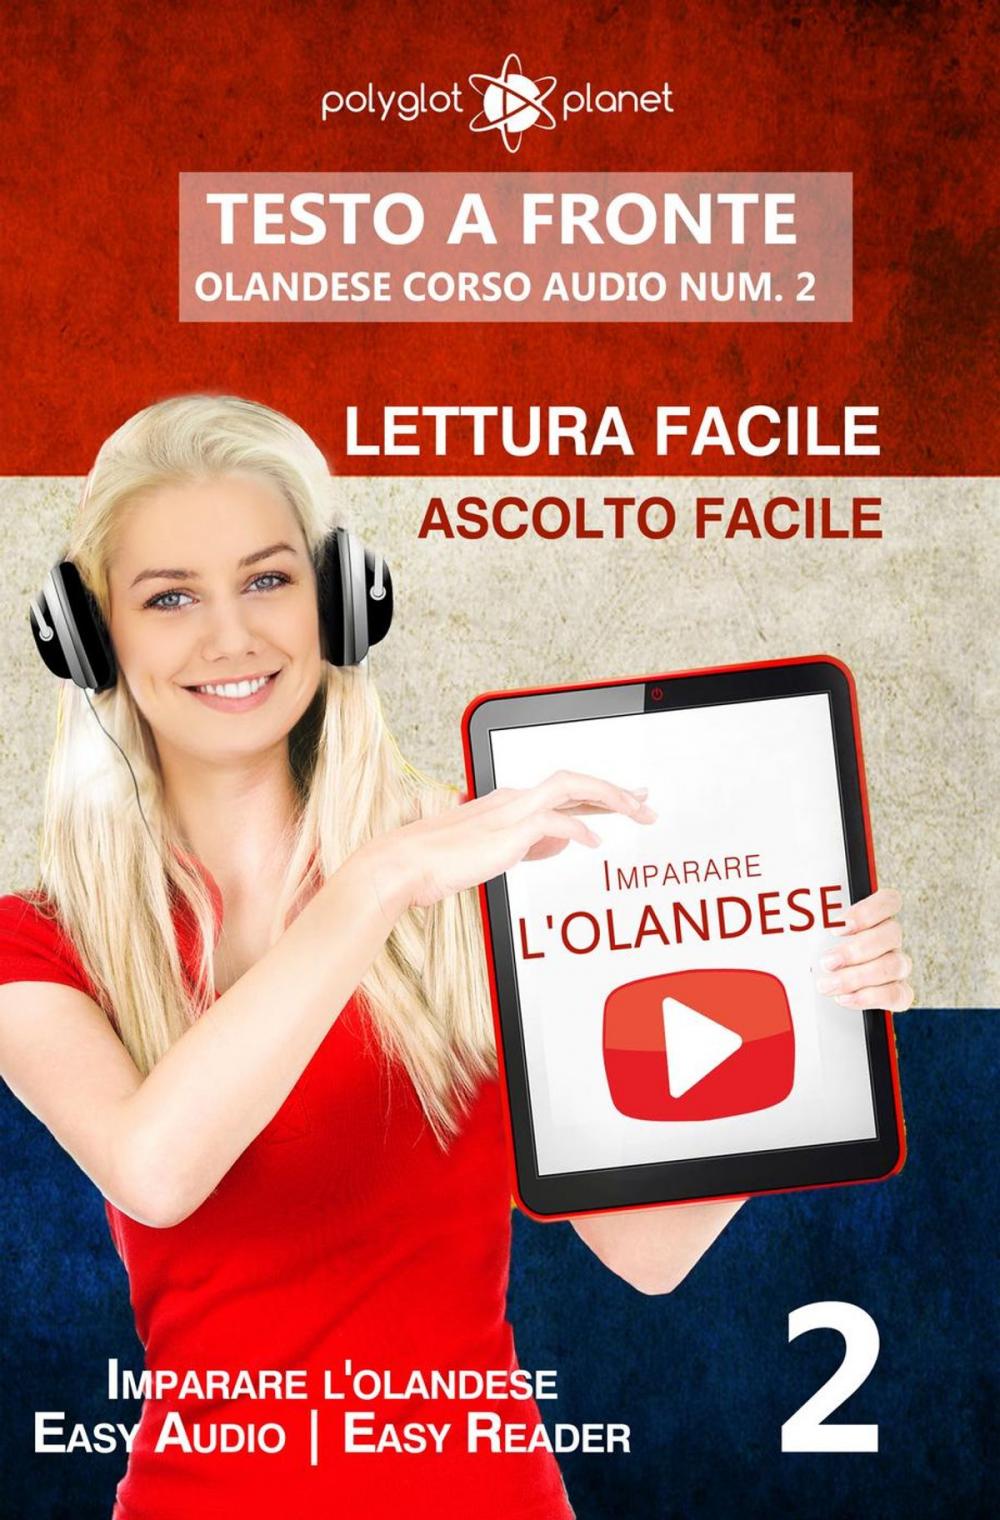 Big bigCover of Imparare l'olandese - Lettura facile | Ascolto facile | Testo a fronte - Olandese corso audio num. 2